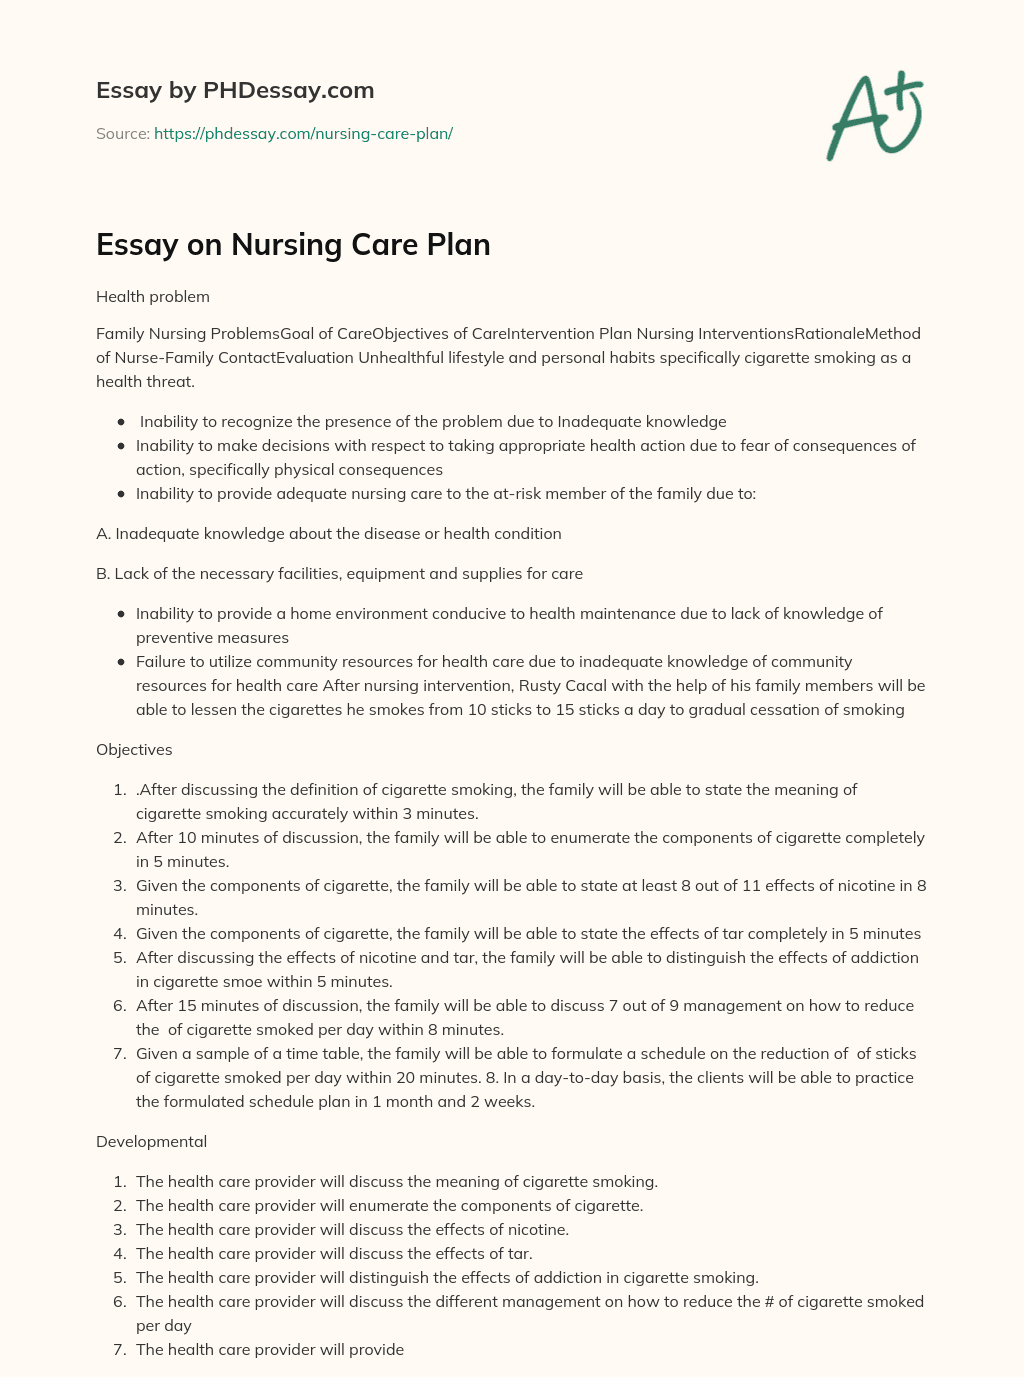 patient care plan essay